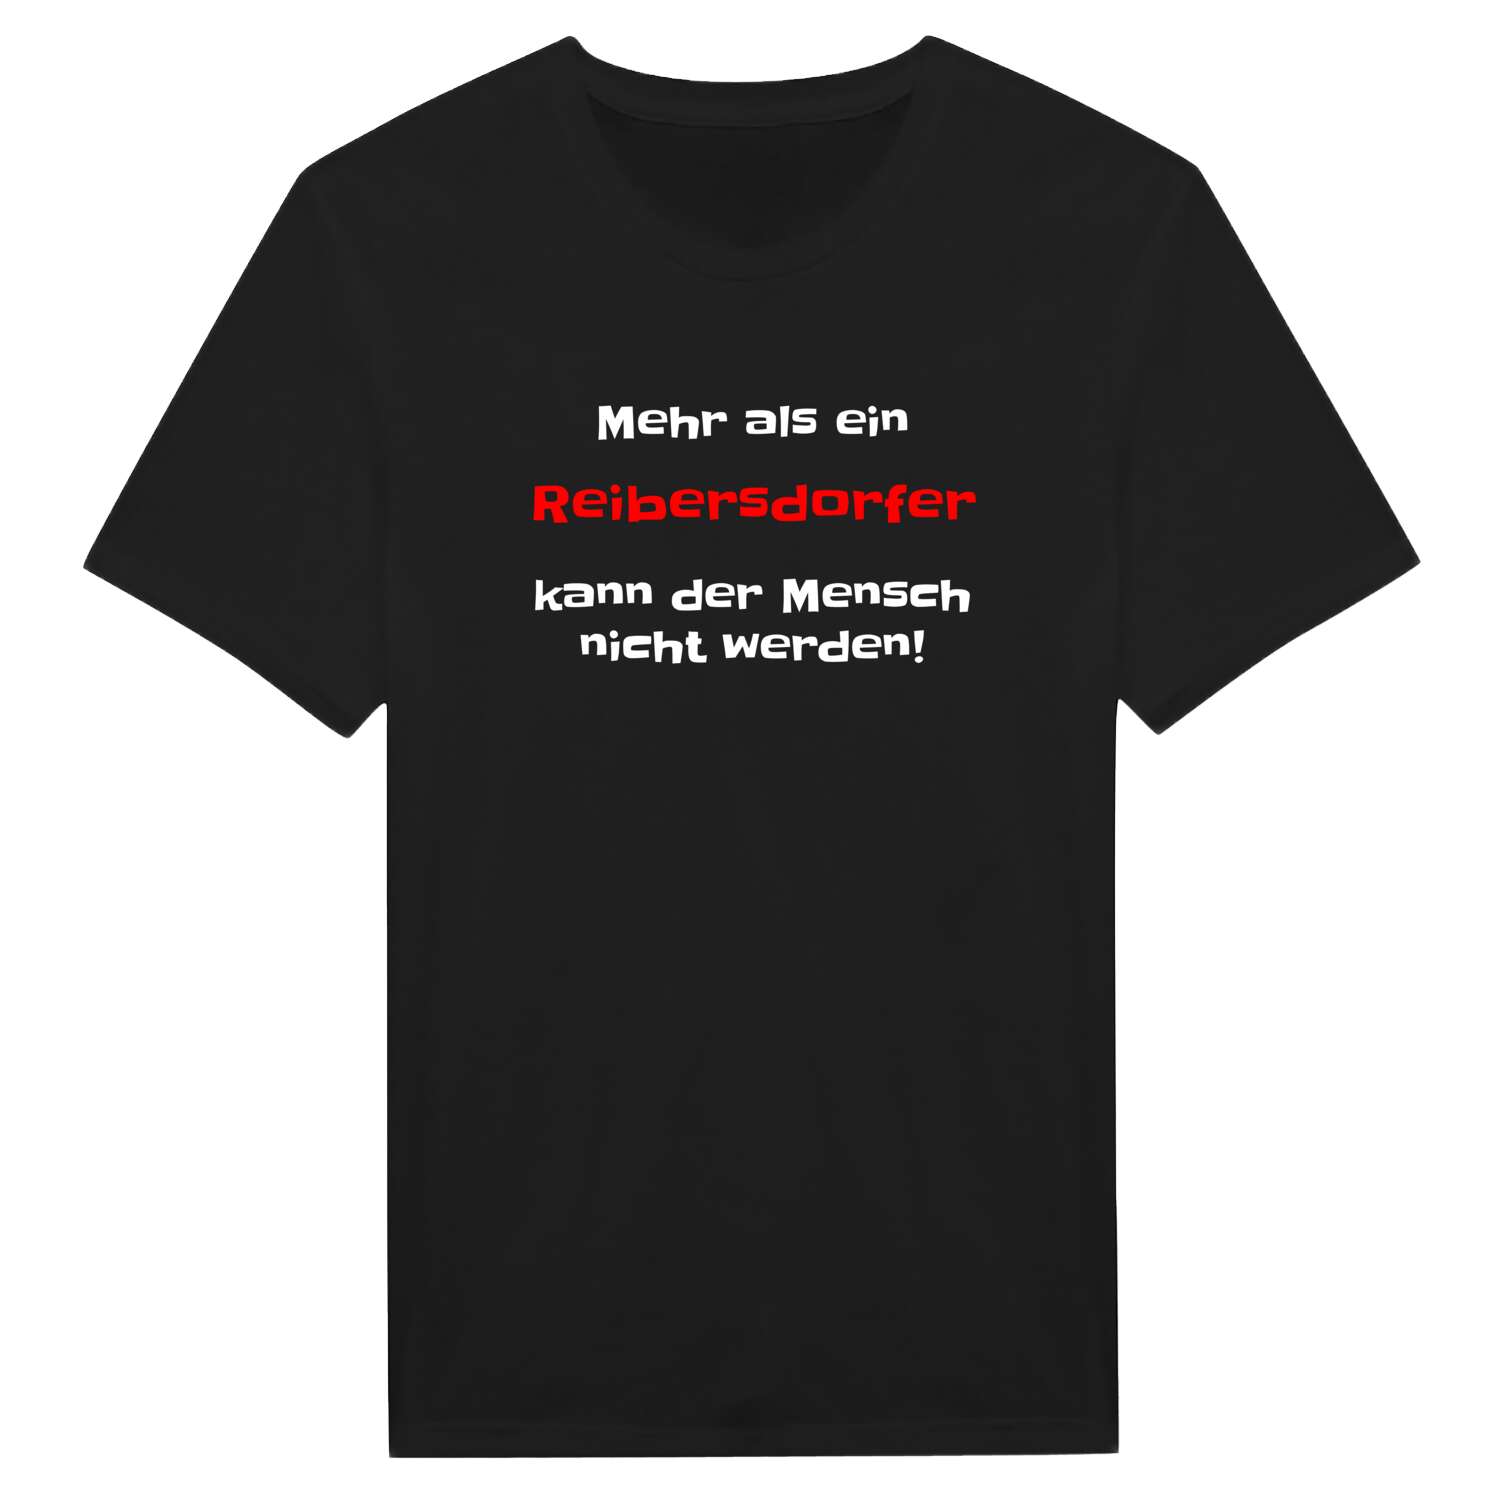 Reibersdorf T-Shirt »Mehr als ein«